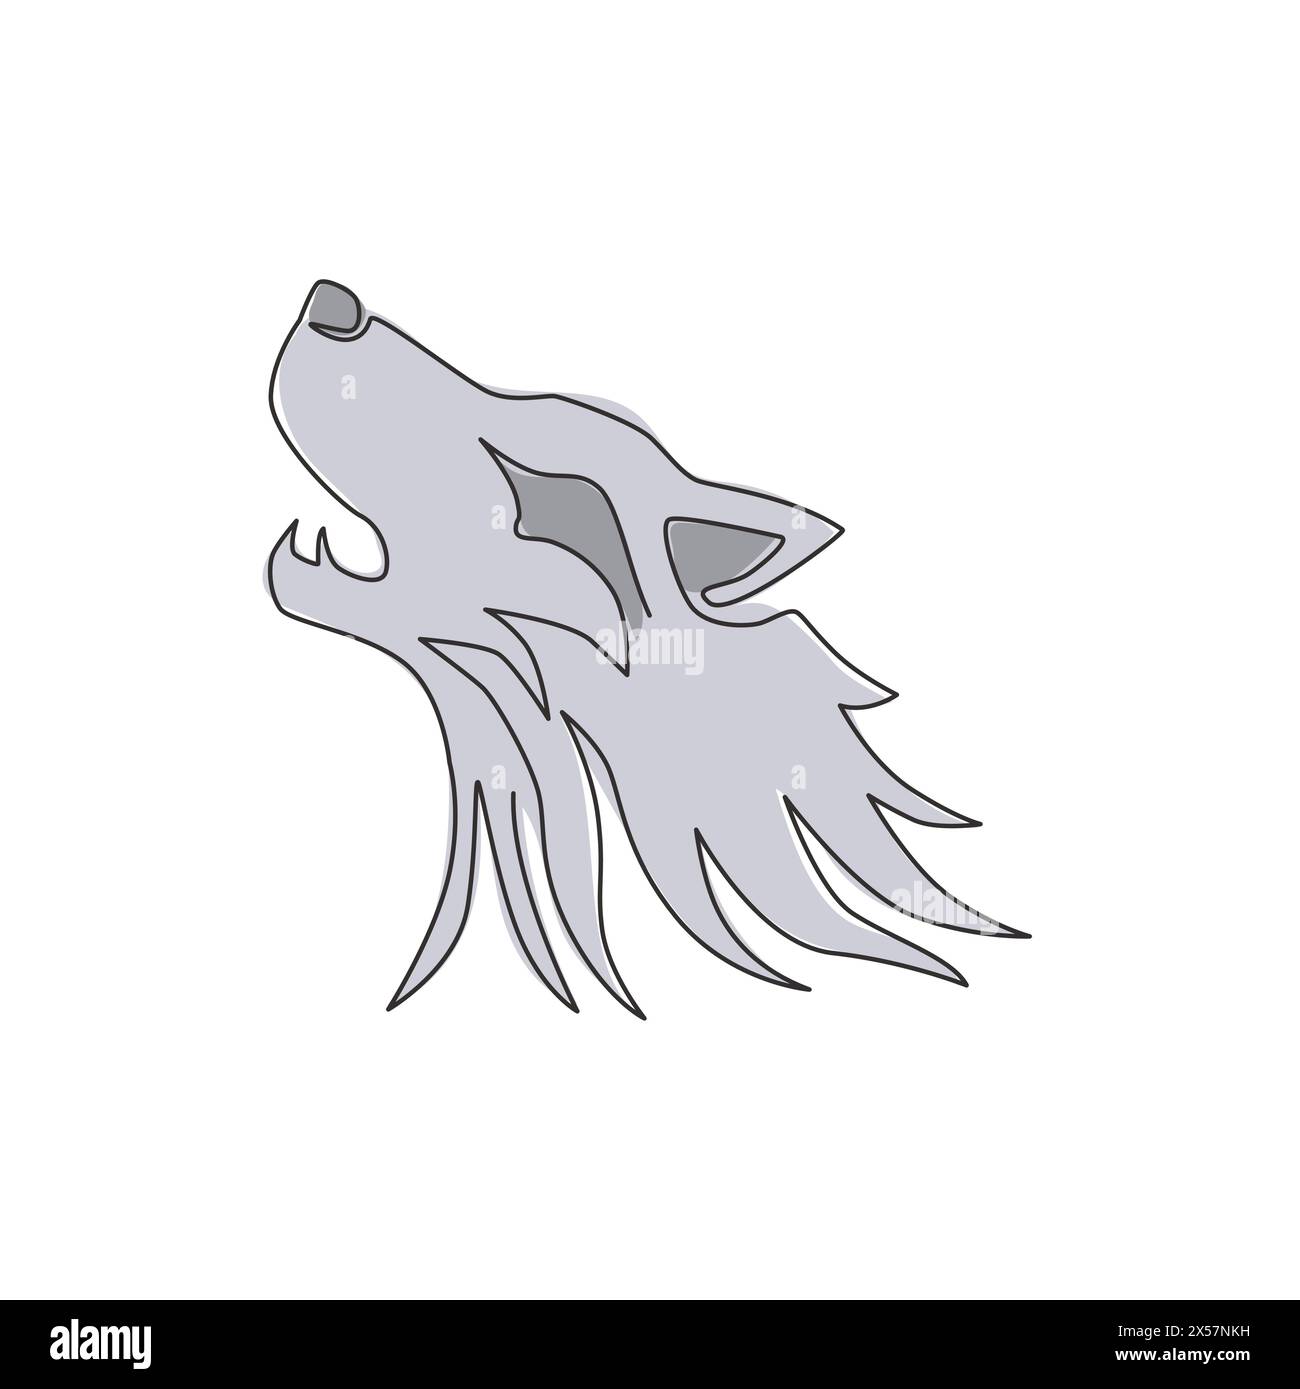 Un dessin de ligne continue de tête de loup dangereuse pour l'identité de logo d'entreprise. Concept d'emblème de mascotte de loups pour icône de parc de conservation. Single tendance Illustration de Vecteur